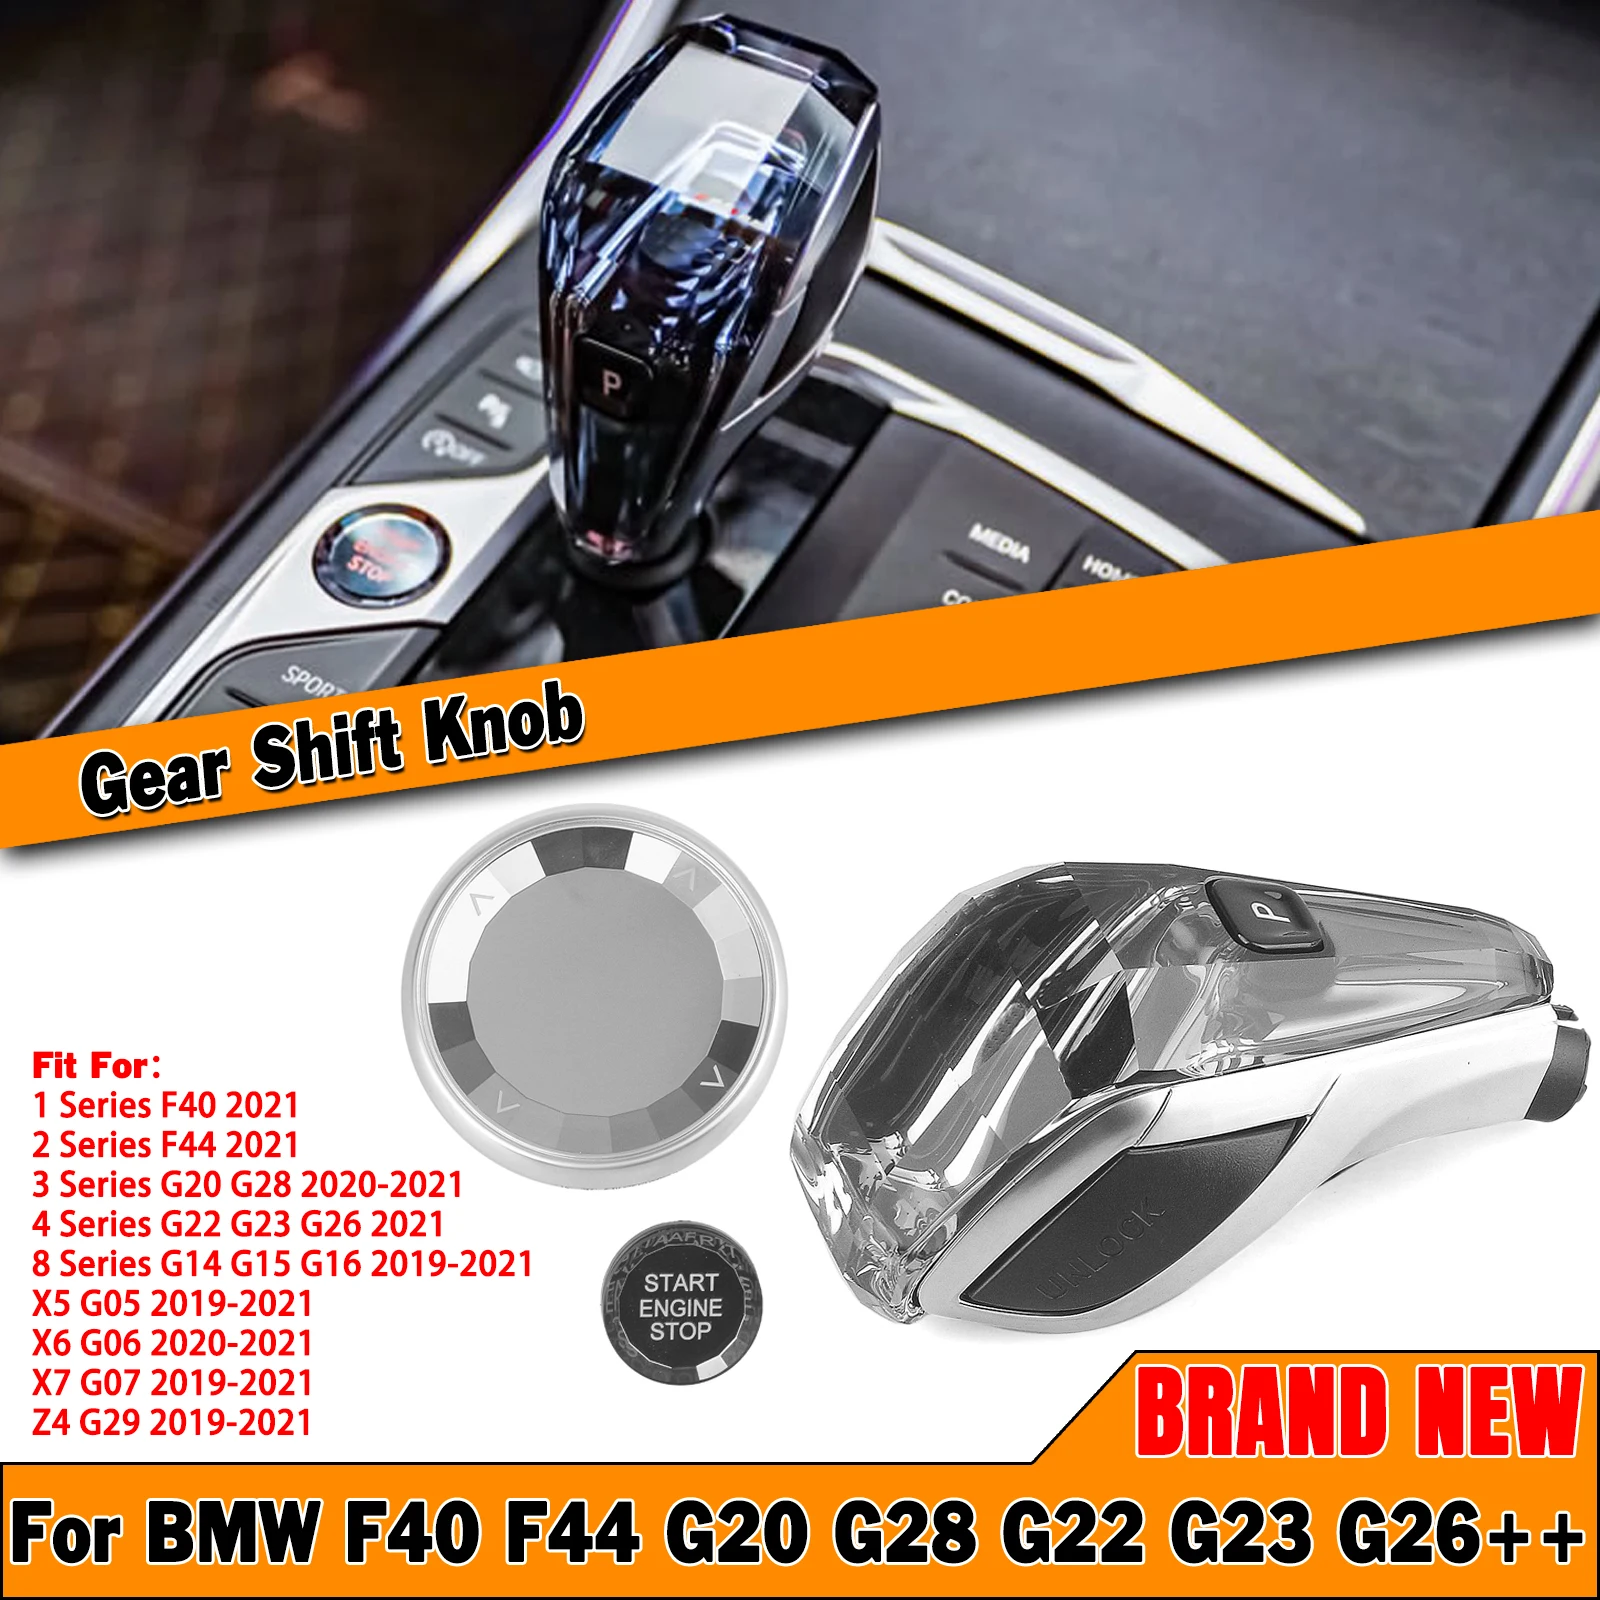 

Luxury Crystal Car Gear Shift Head Knob Shifter Engine Button Cover For BMW G20 G22 G28 G23 G26 G29 F40 F44 G Chassis 2019-2021